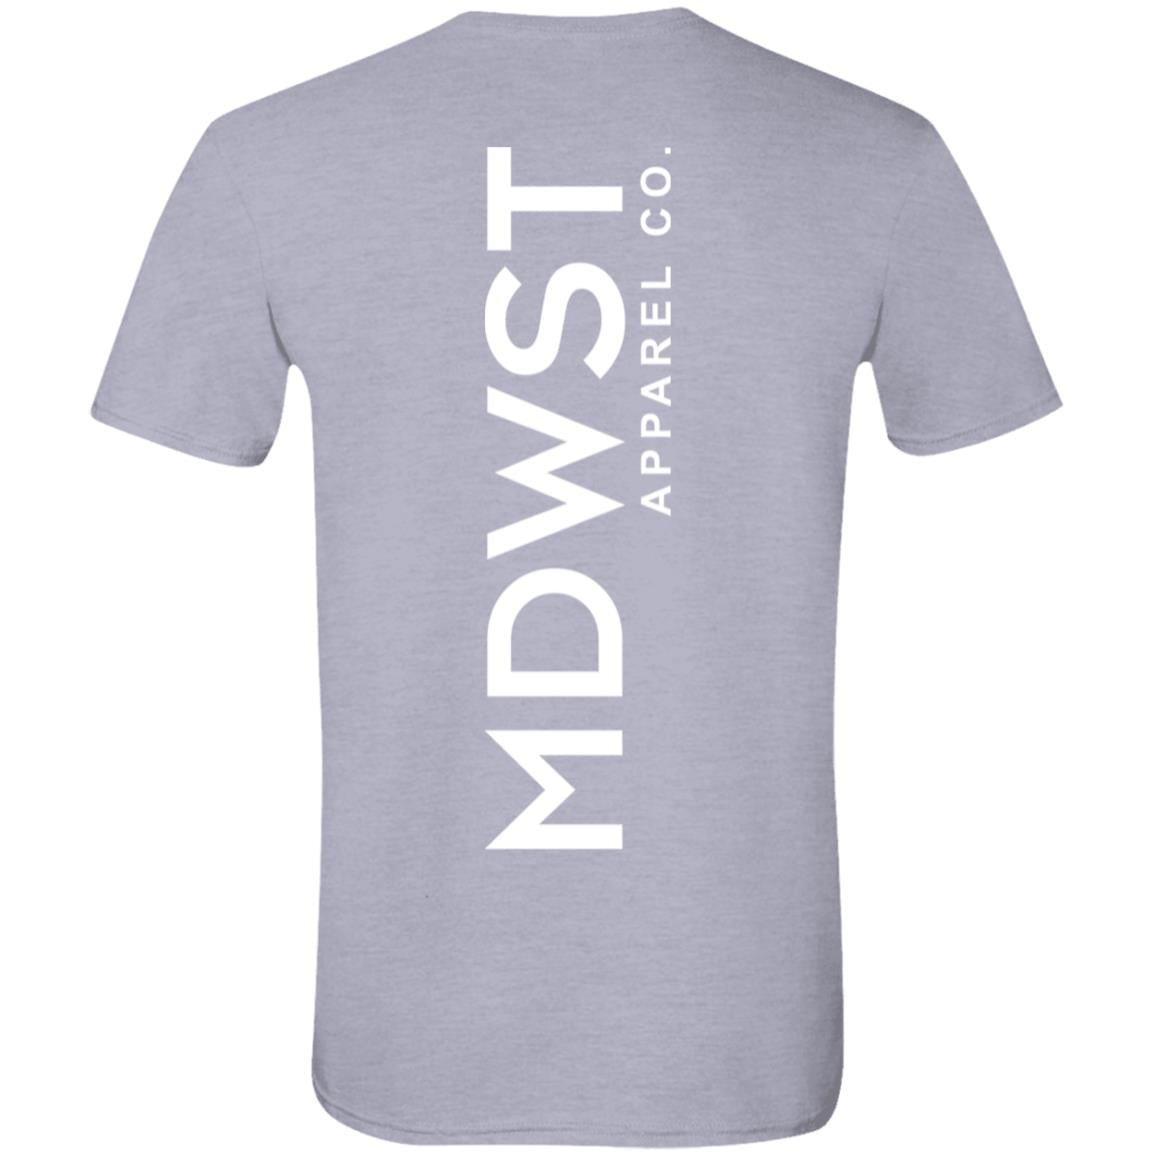 MDWST Vertical T-Shirt